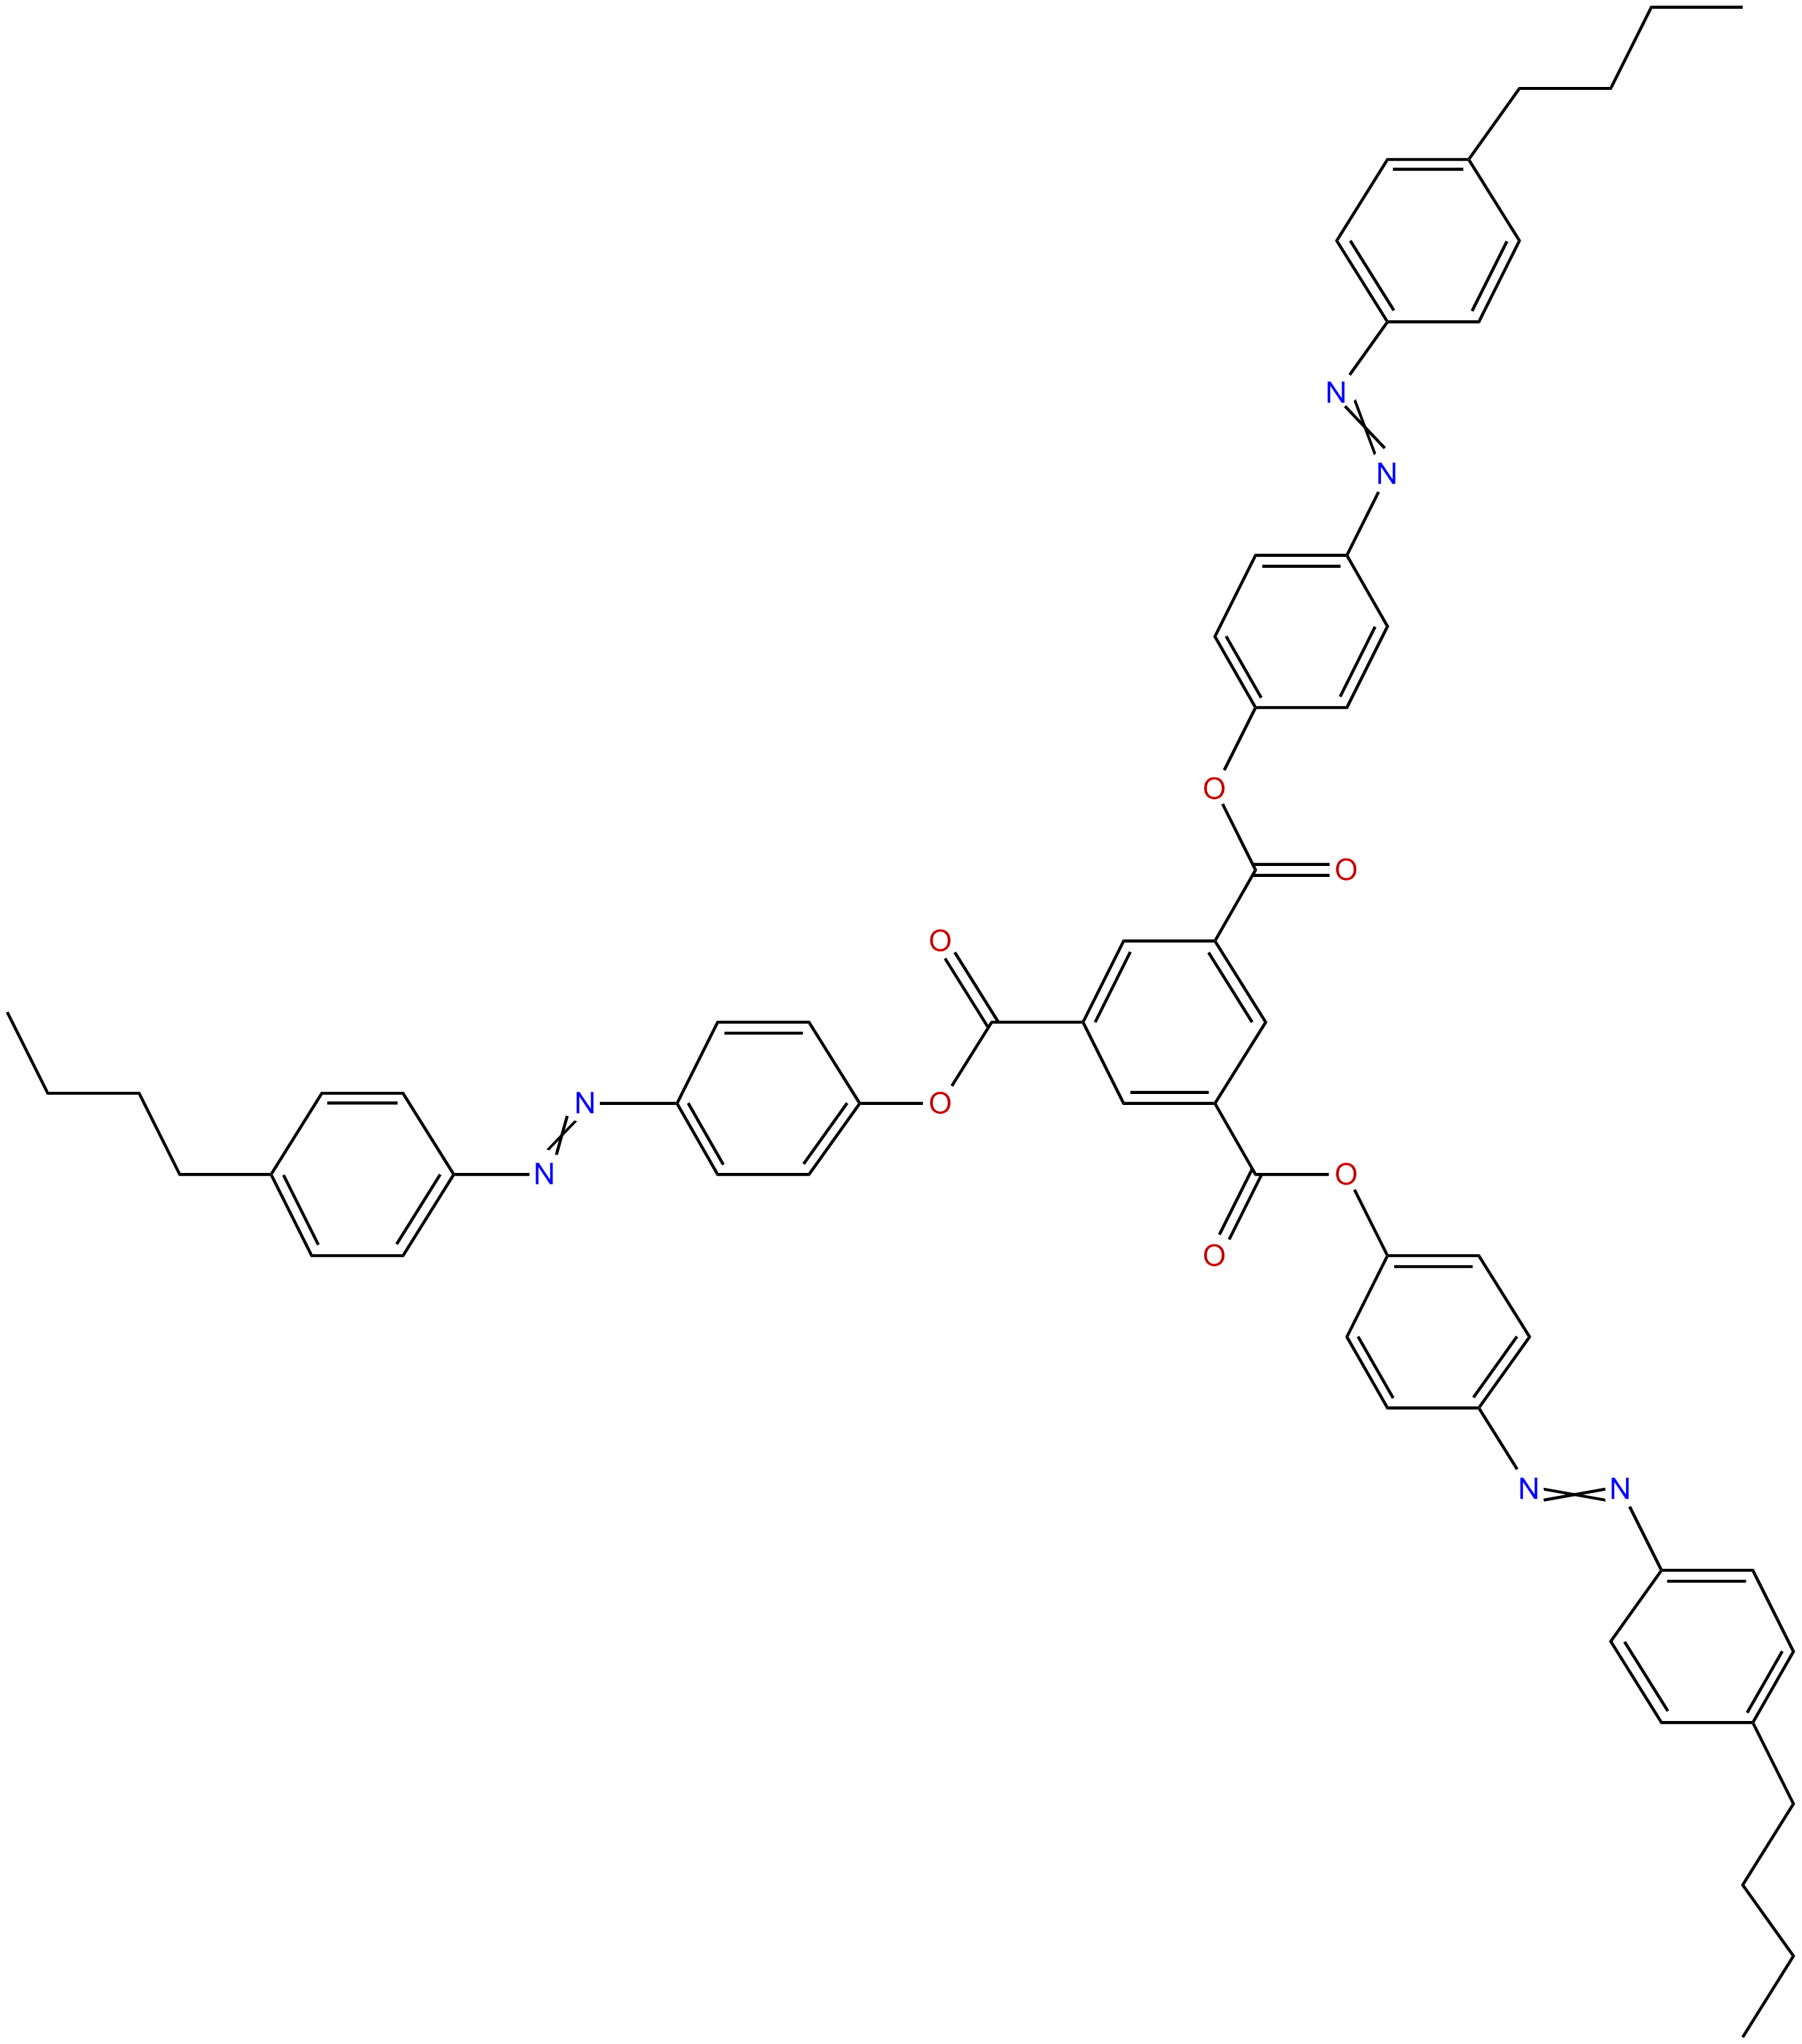 Image of tris[4-[(4-butylphenyl)azo]phenyl] 1,3,5-benzenetricarboxylate